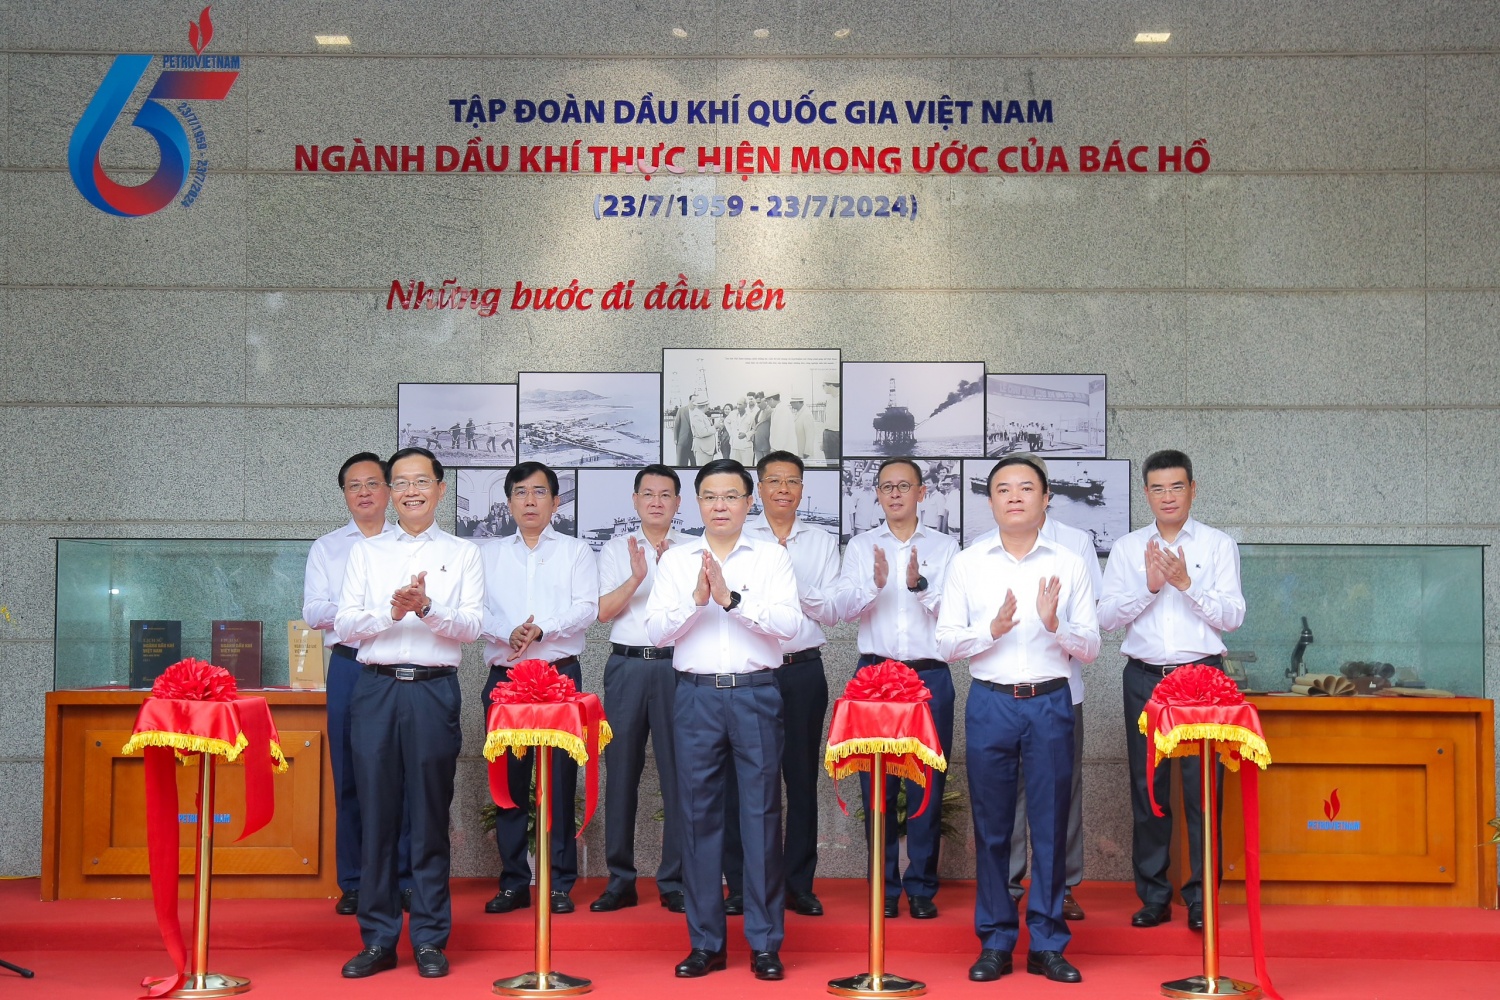 Khai mạc triển lãm ảnh 65 năm ngành Dầu khí Việt Nam thực hiện mong ước của Bác Hồ”